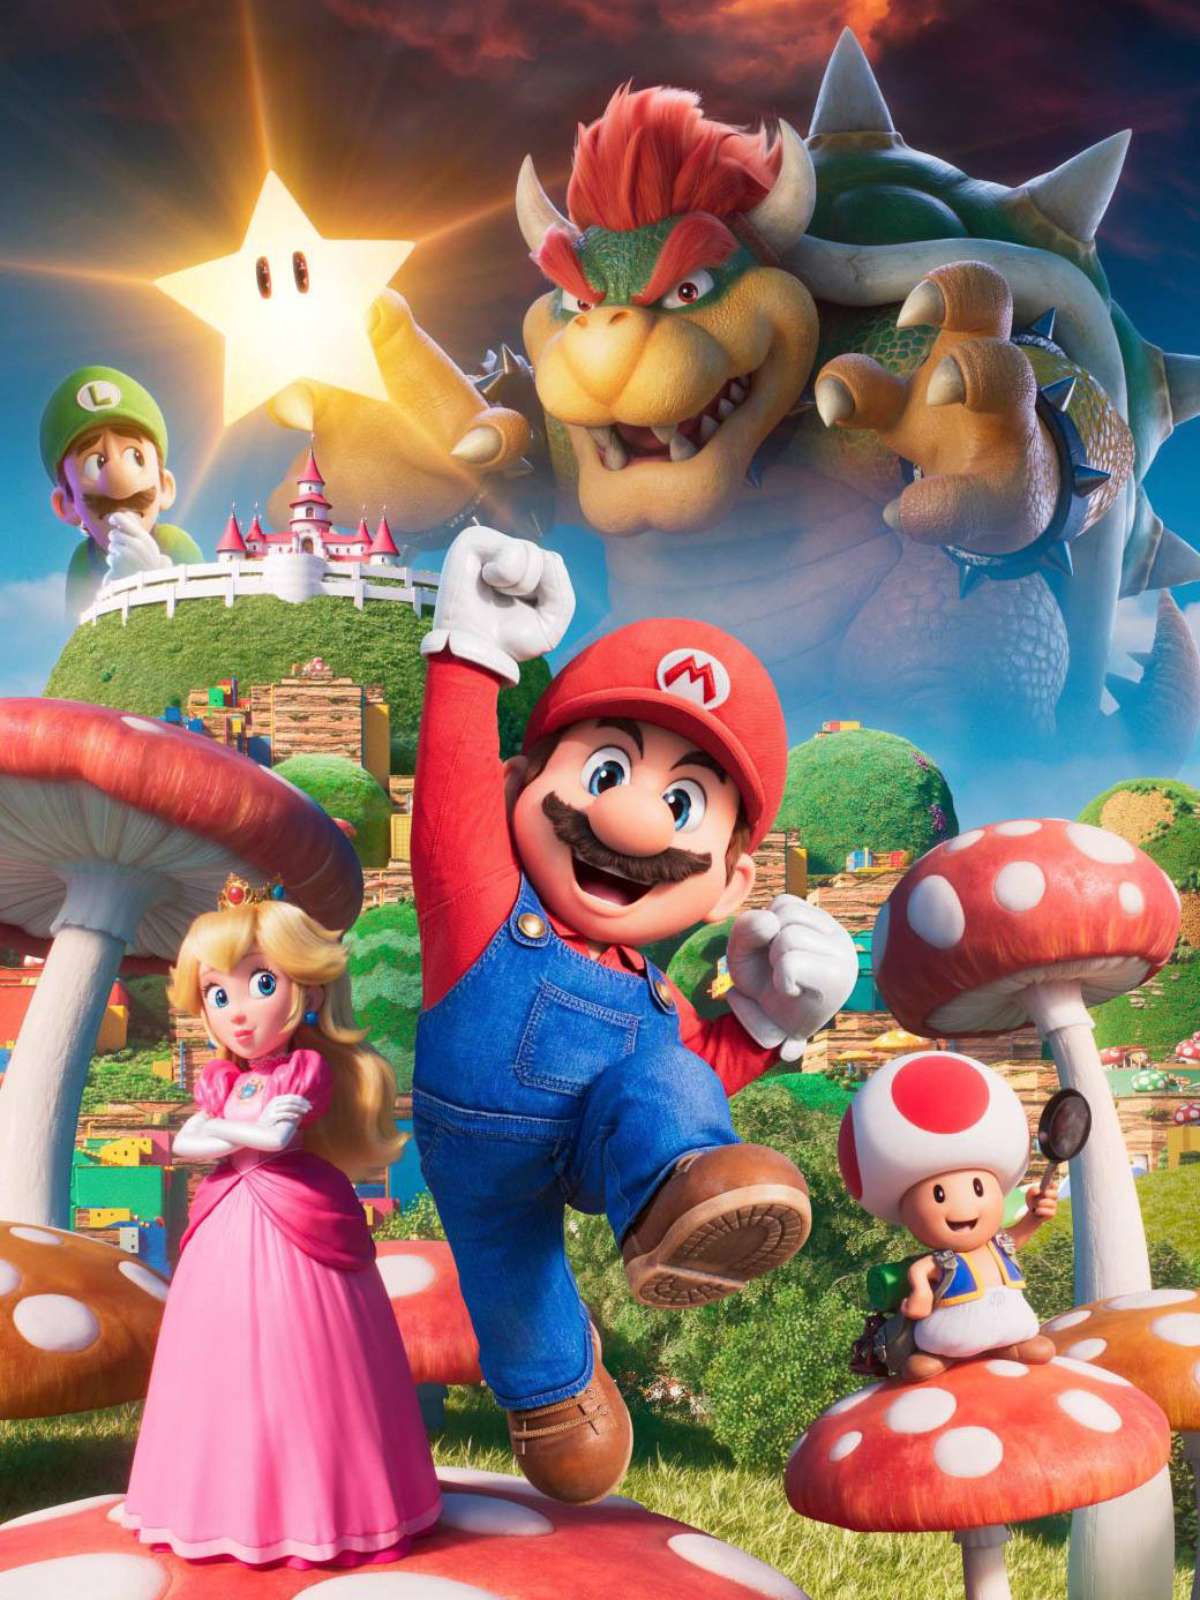 Super Mario Bros. O Filme promete uma aventura com os personagens que todos  adoram! 